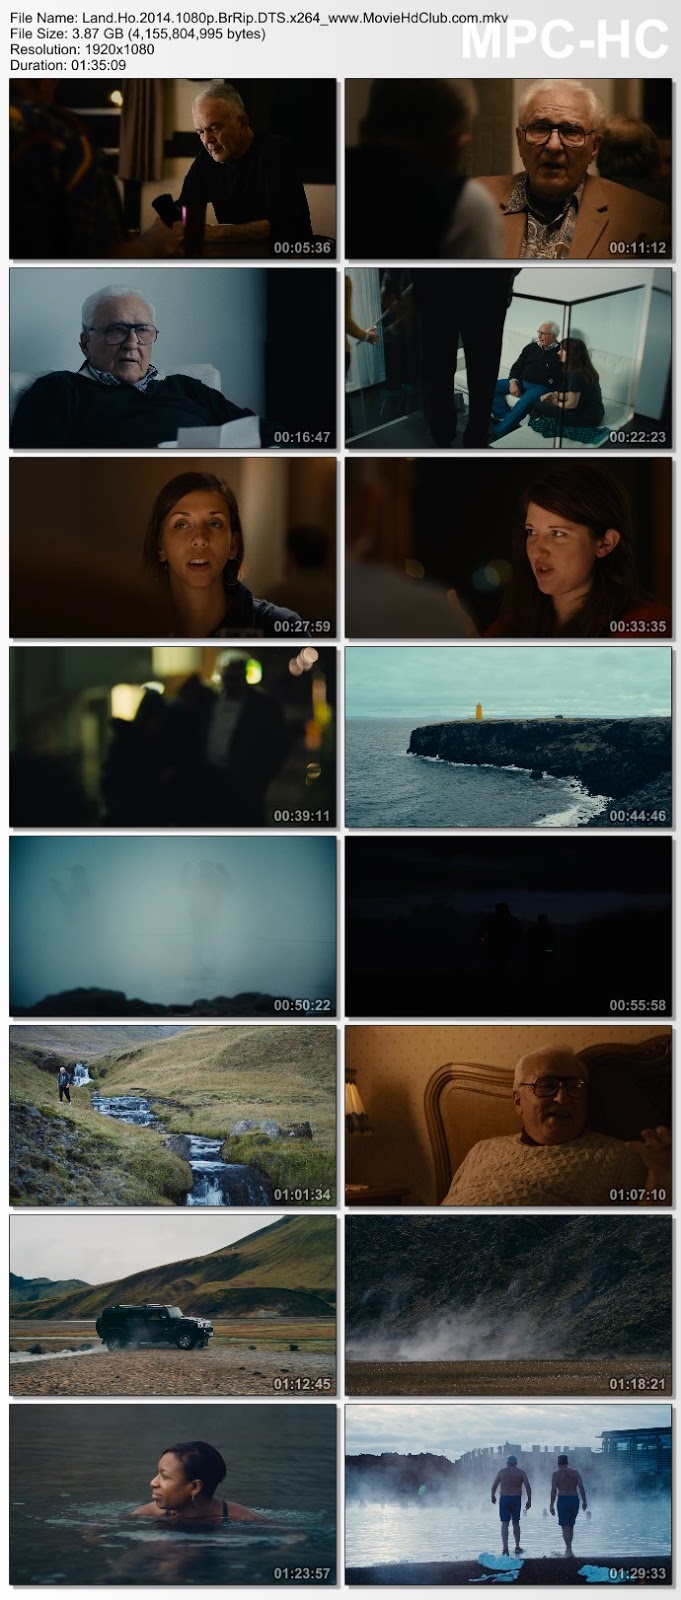 [Mini-HD] Land Ho! (2014) - คู่เก๋าตะลอนทัวร์ [1080p][เสียง:ไทย 5.1/Eng DTS][ซับ:ไทย/Eng][.MKV][3.87GB] LH_MovieHdClub_SS